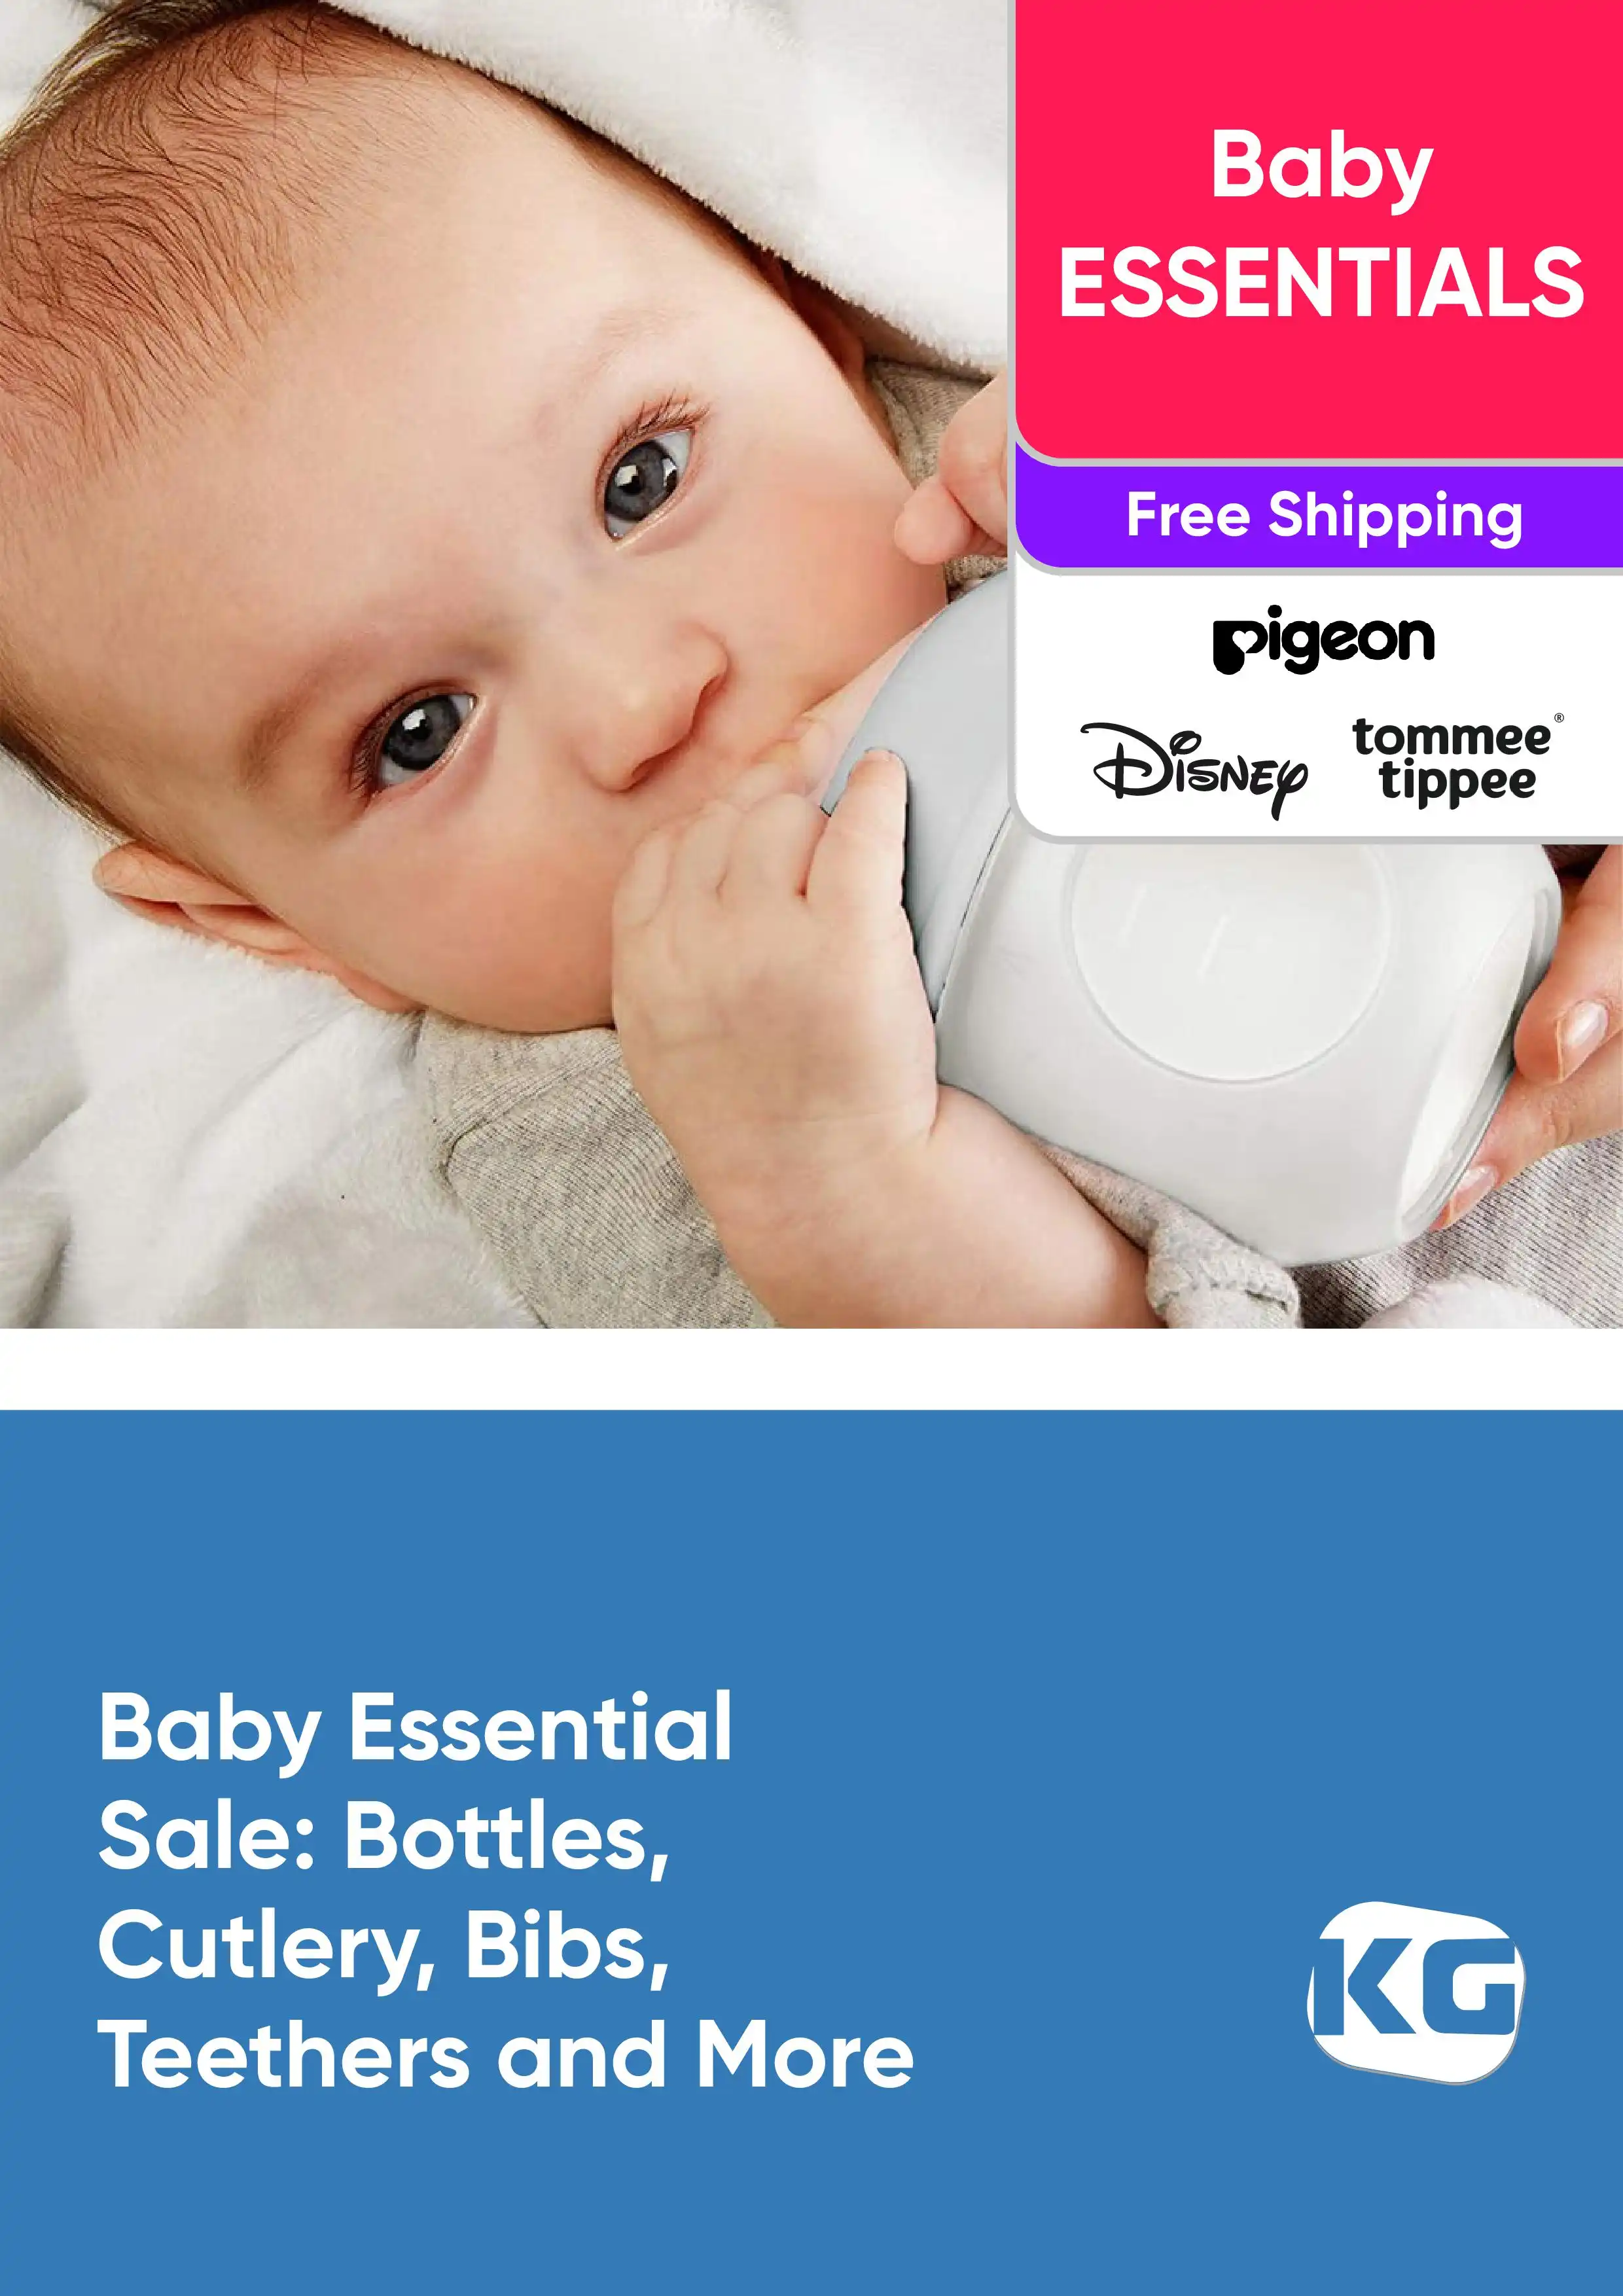 Baby Essential Sale - Bottles, Cutlery, Bibs, Teethers and More - PIGEON, Disney, Tommee Tippee